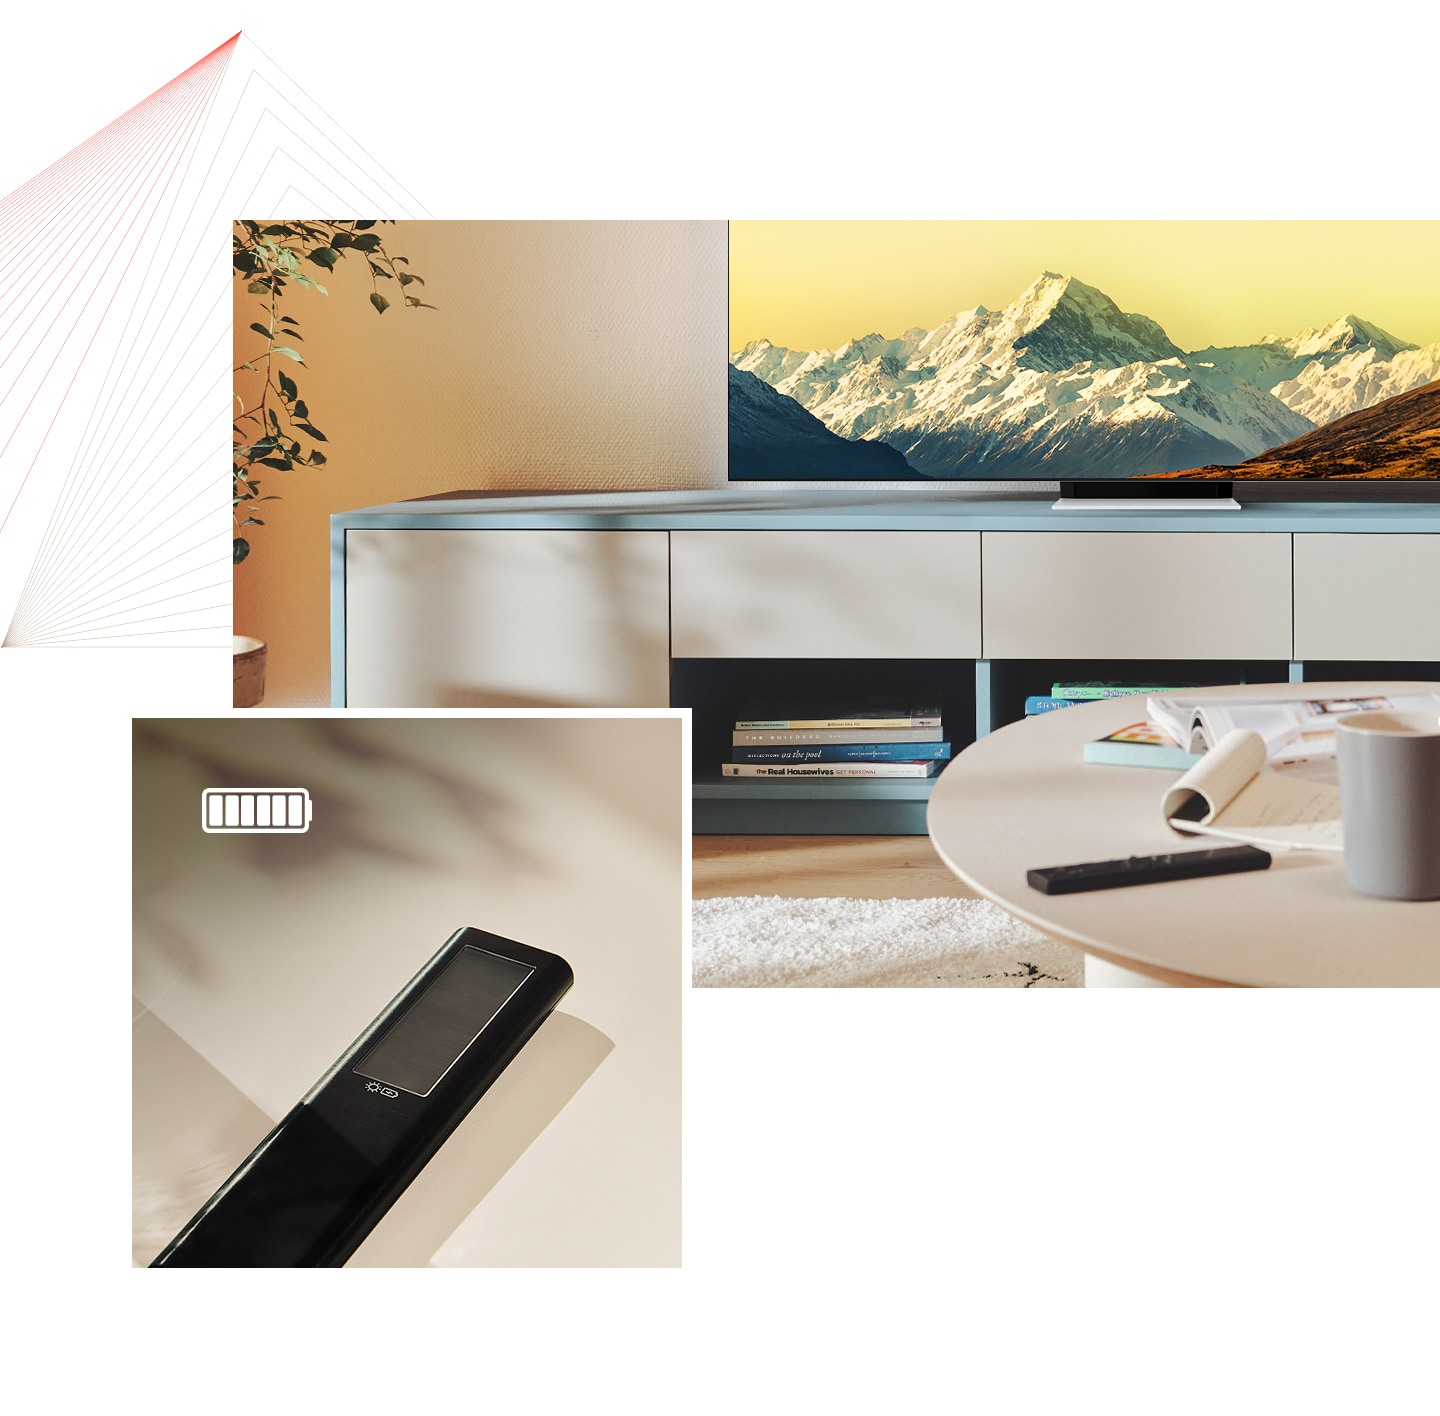 أولاً ، يوجد جهاز التحكم عن بعد SolarCell على طاولة في غرفة مشرقة مع عرض Neo QLED أيضًا. ثانيًا ، يتم عرض صورة مقربة لوحدة التحكم عن بُعد الخاصة بـ SolarCell مع أيقونة بطارية مشحونة بالكامل.